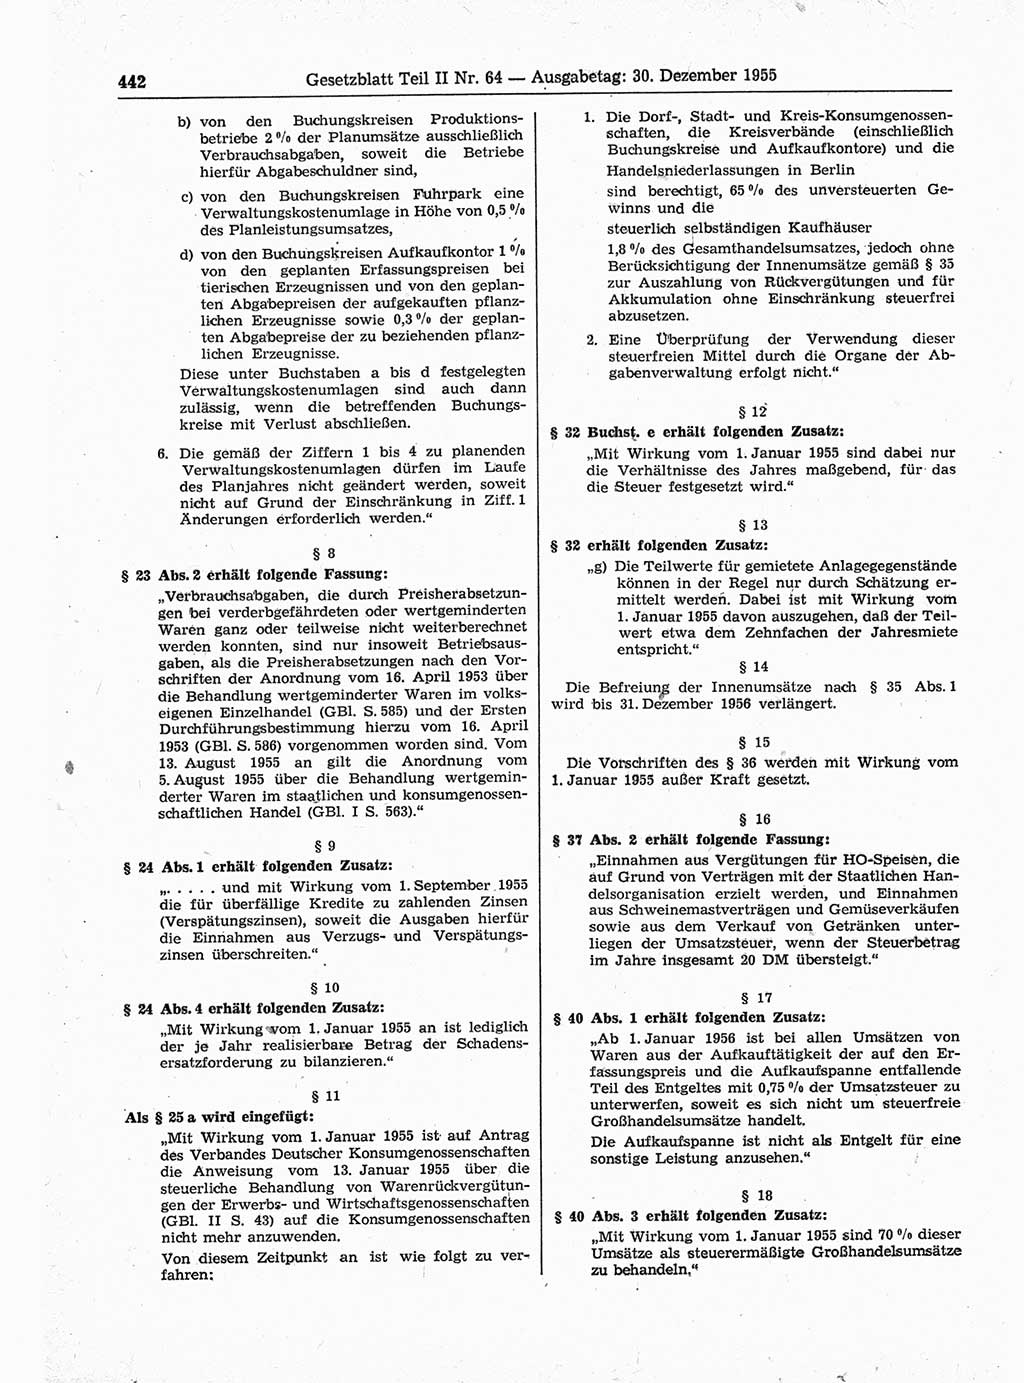 Gesetzblatt (GBl.) der Deutschen Demokratischen Republik (DDR) Teil ⅠⅠ 1955, Seite 442 (GBl. DDR ⅠⅠ 1955, S. 442)